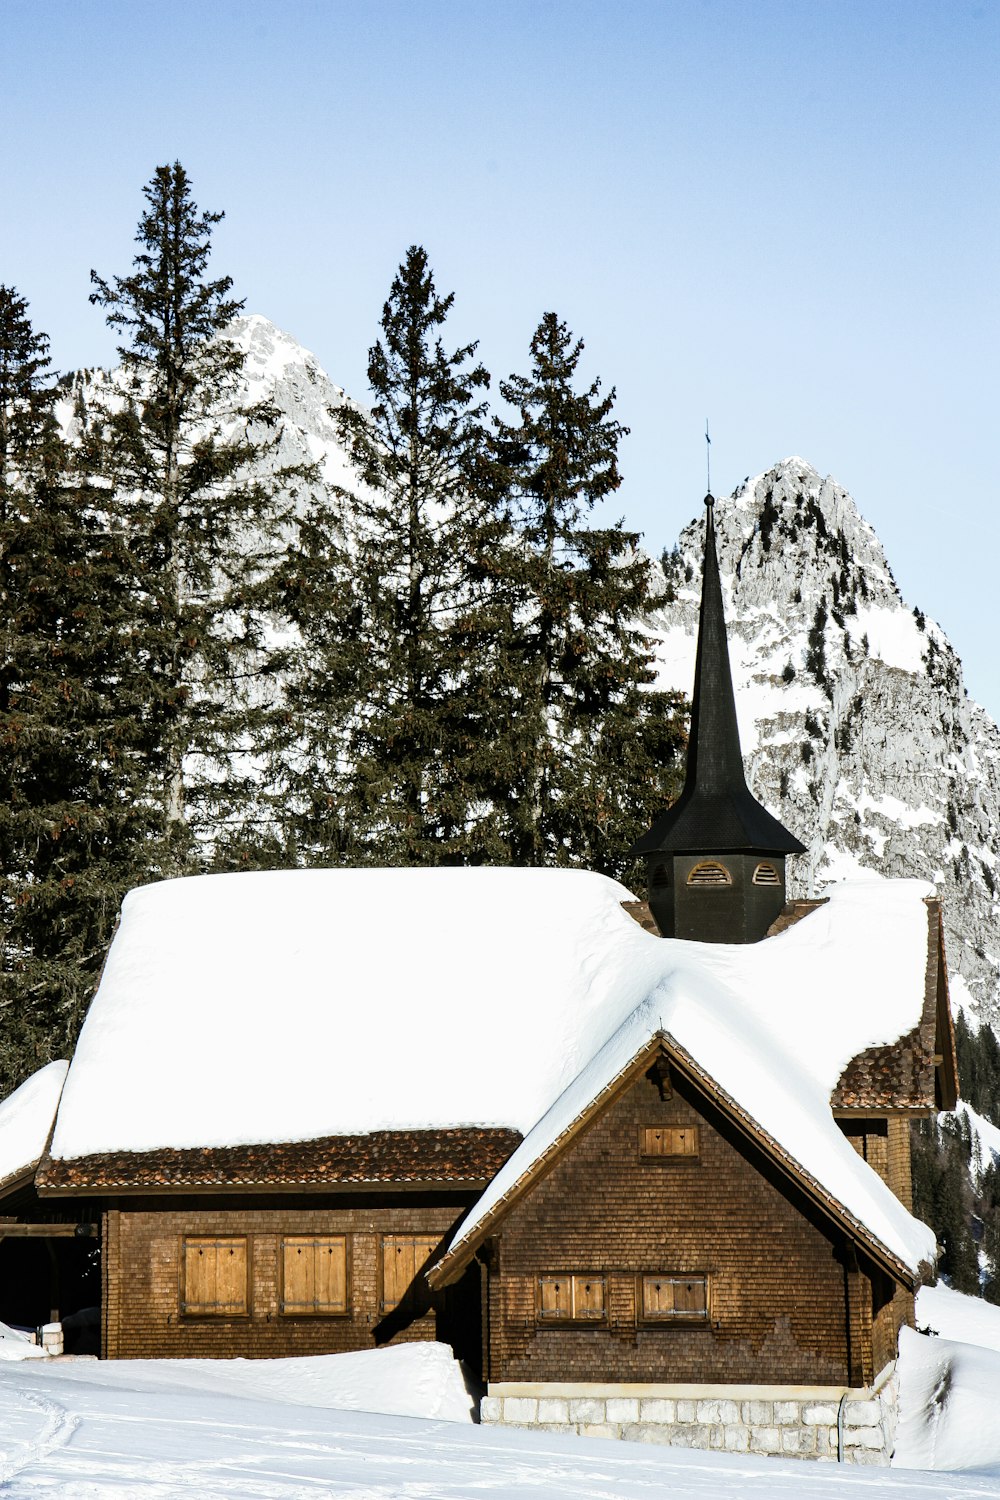 Casa coberta de neve branca e pinheiro sob o céu azul